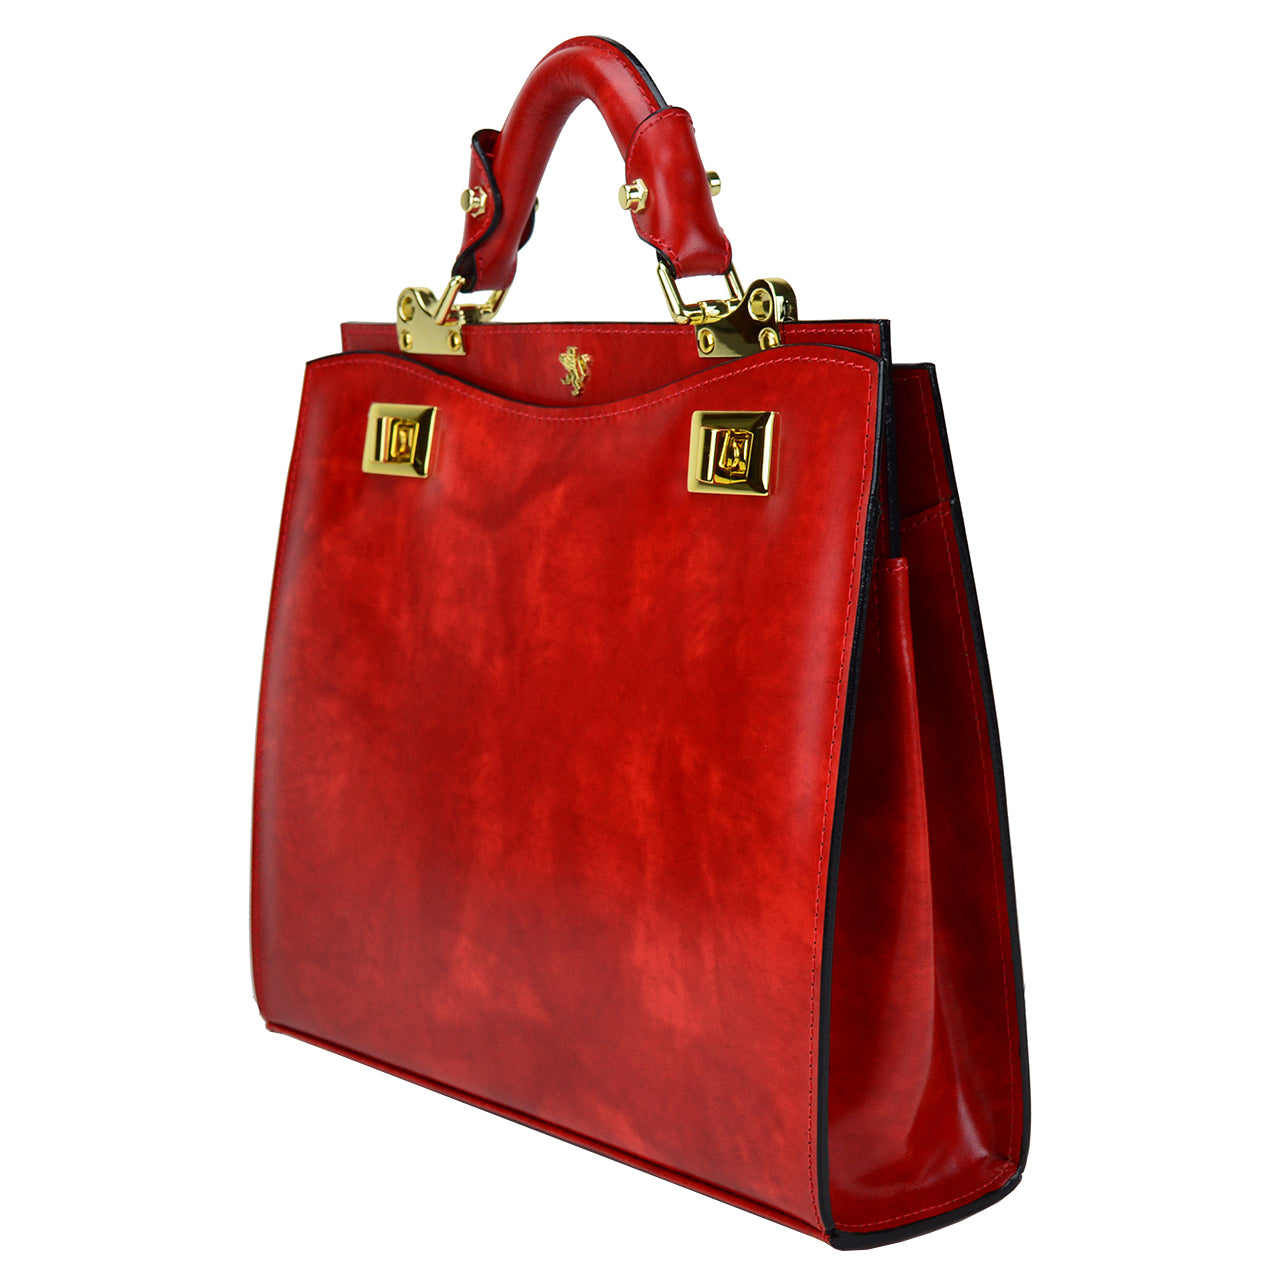 Pratesi Anna Maria Luisa de' Medici Medium Lady Bag in genuine Italian leather - Brunelleschi Leather Panna